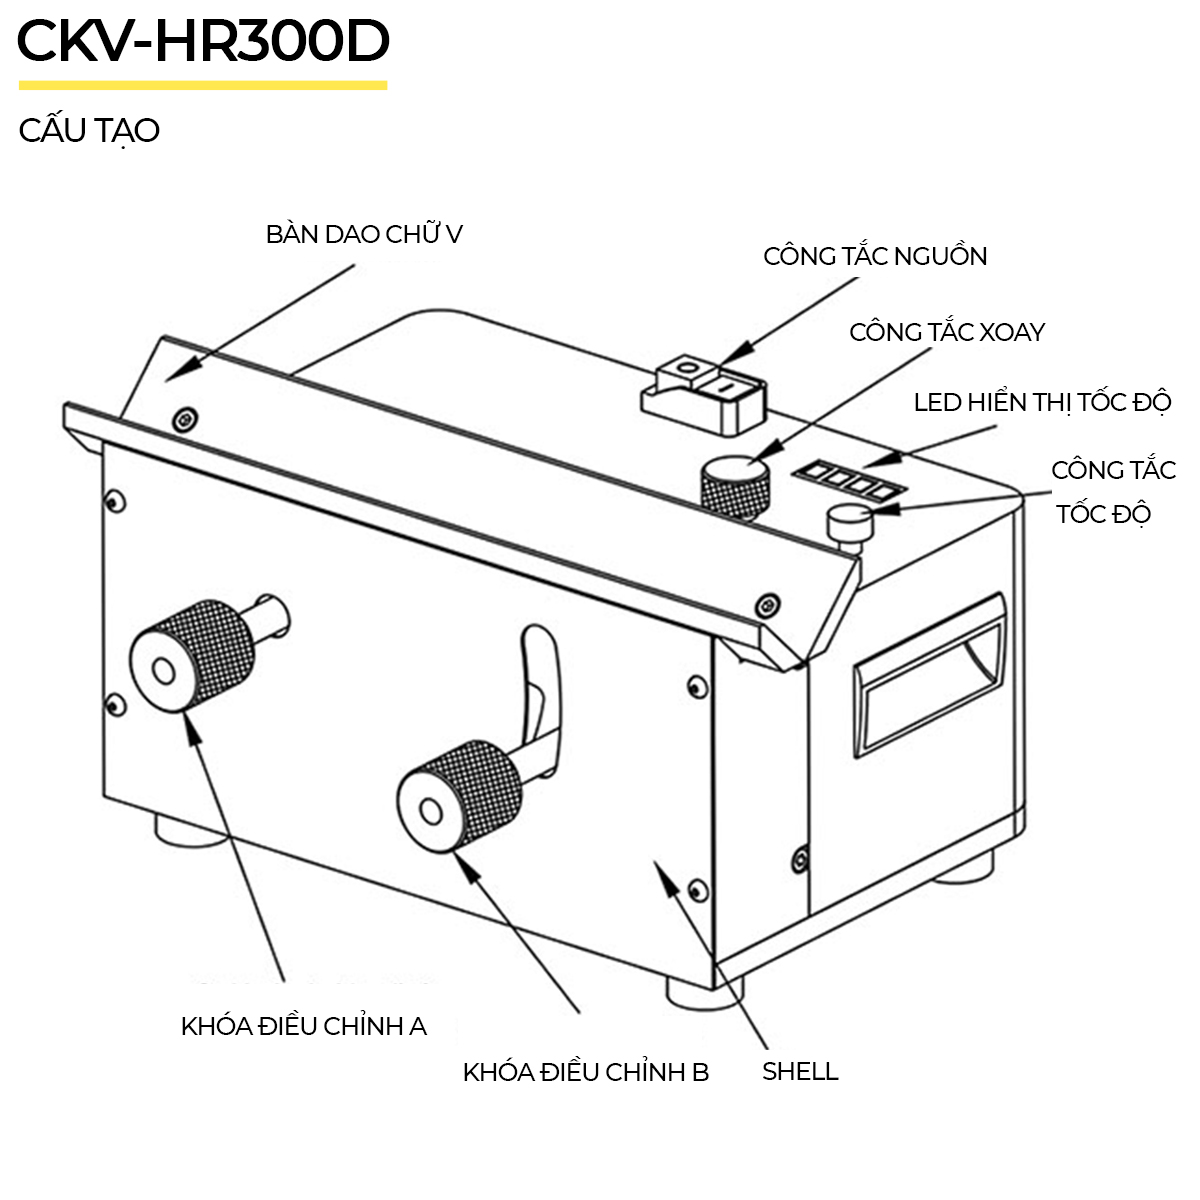 Cấu tạo máy vát mép để bàn CKV-HR300D